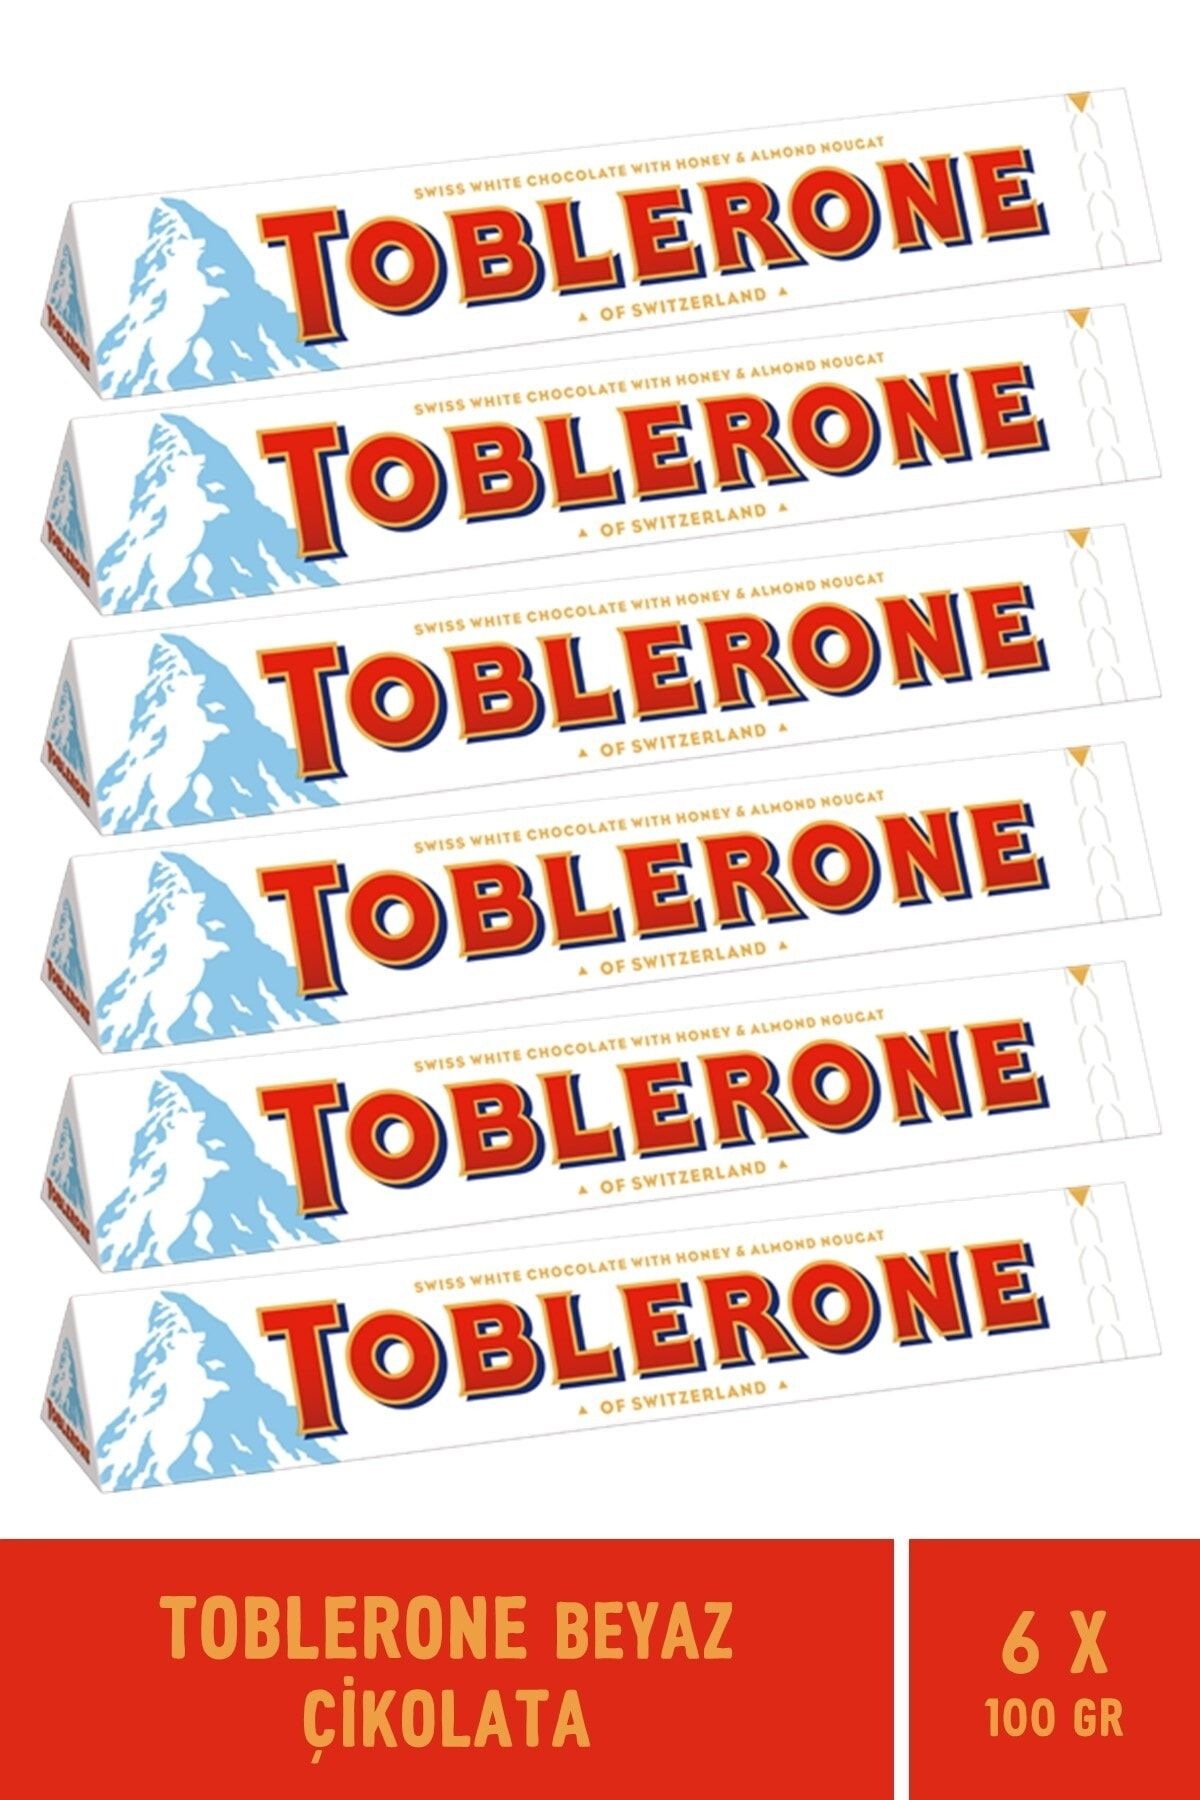 Toblerone Beyaz Çikolata 100 Gr - 6 Adet